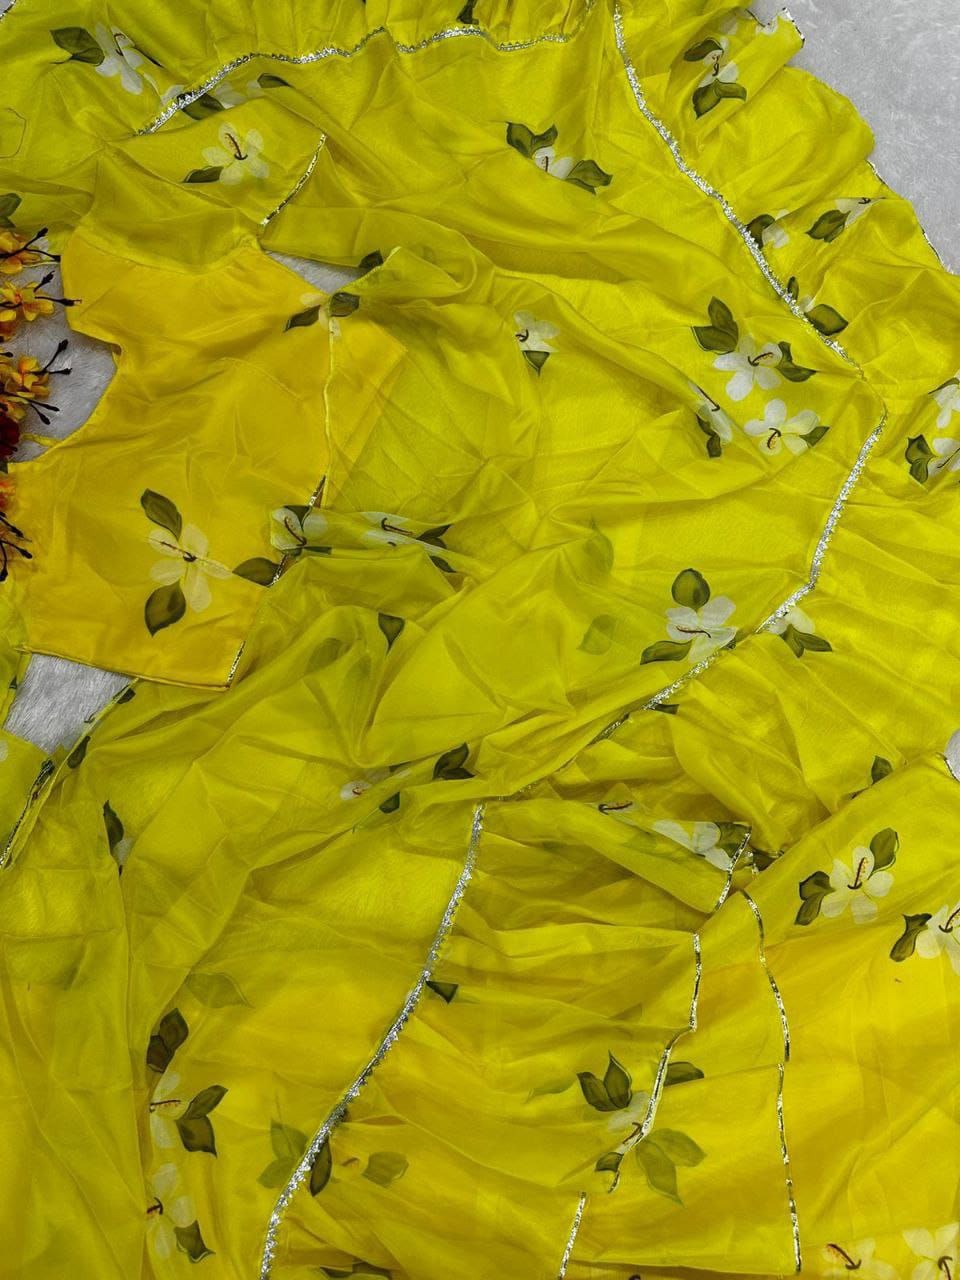 Party wear Floral Women's Lehenga Saree Yellow mahezon